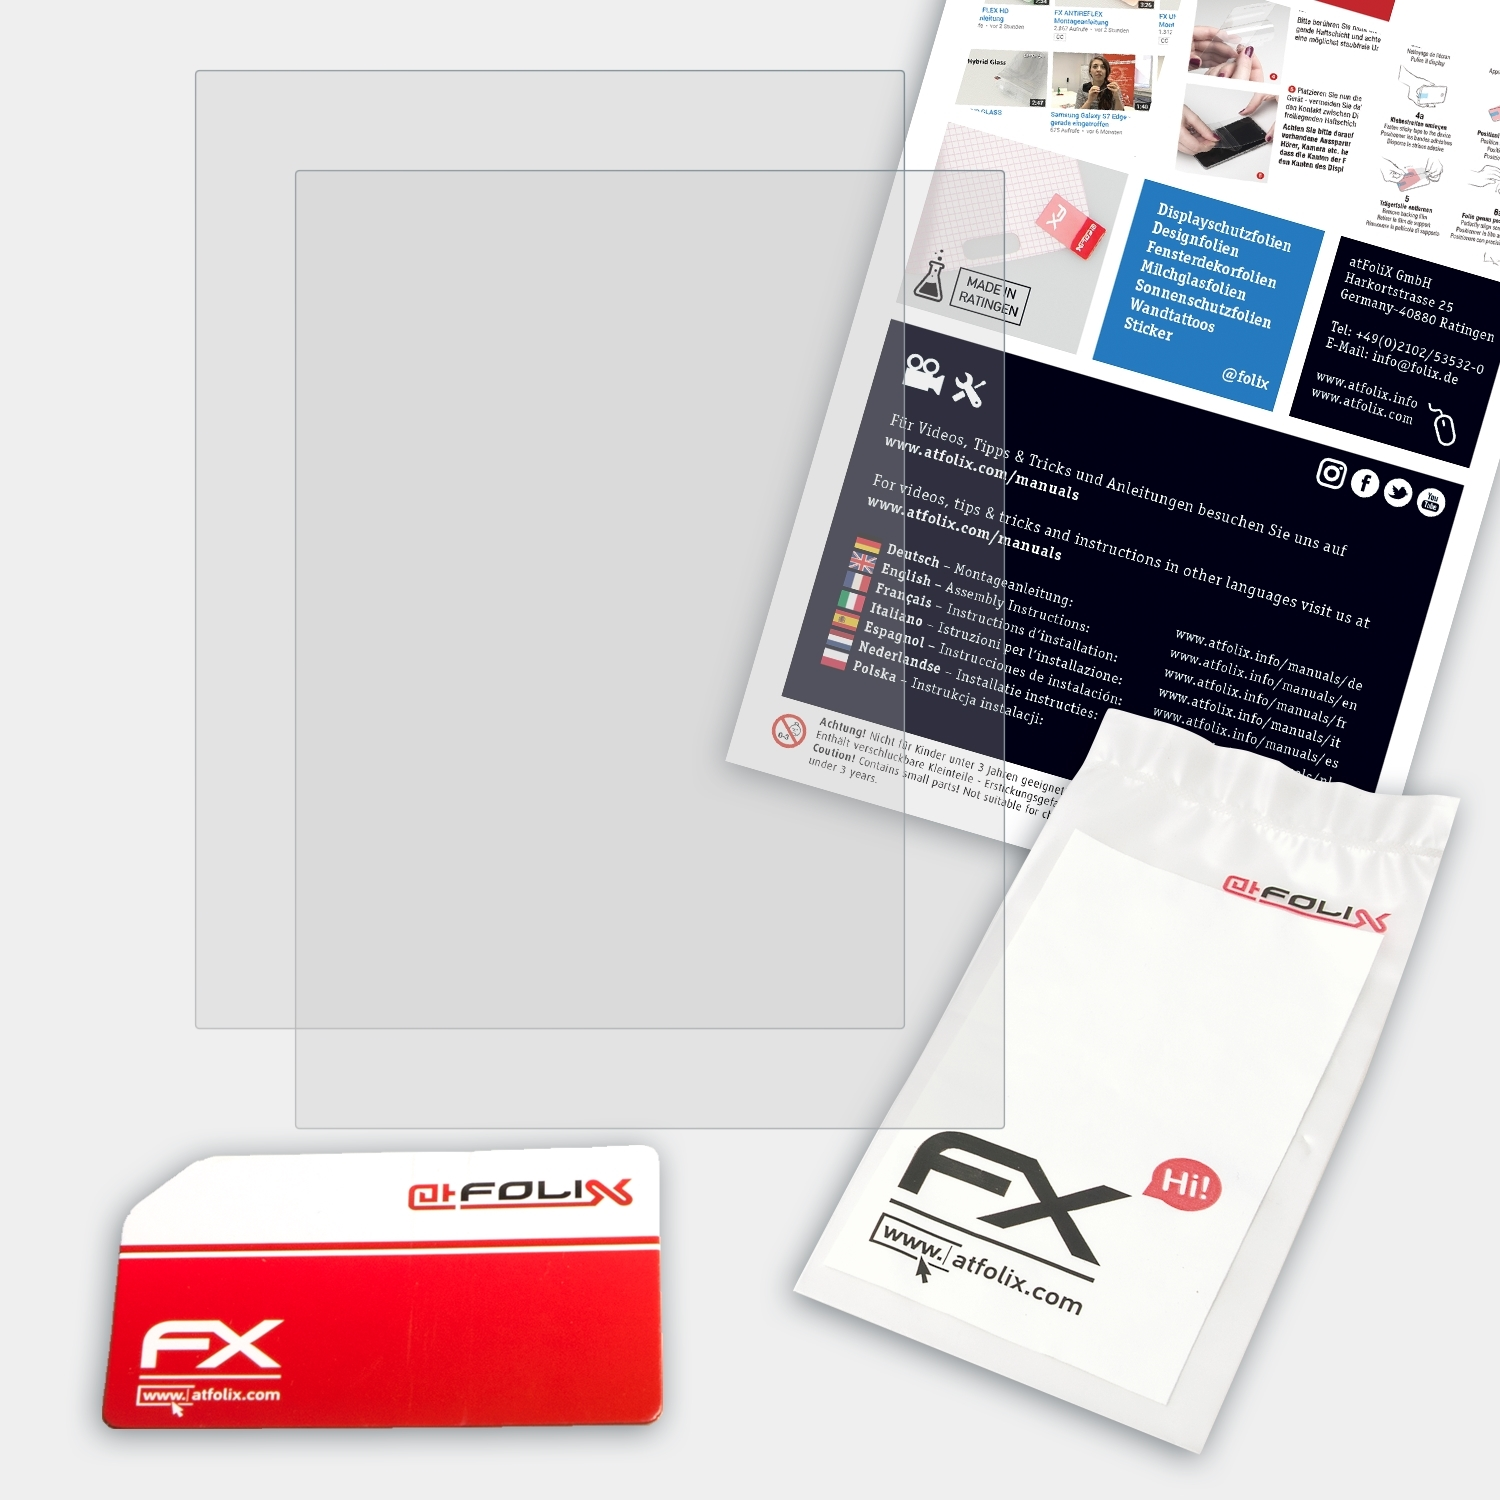 ATFOLIX 2x FX-Antireflex Displayschutz(für Lux 5) PocketBook Touch